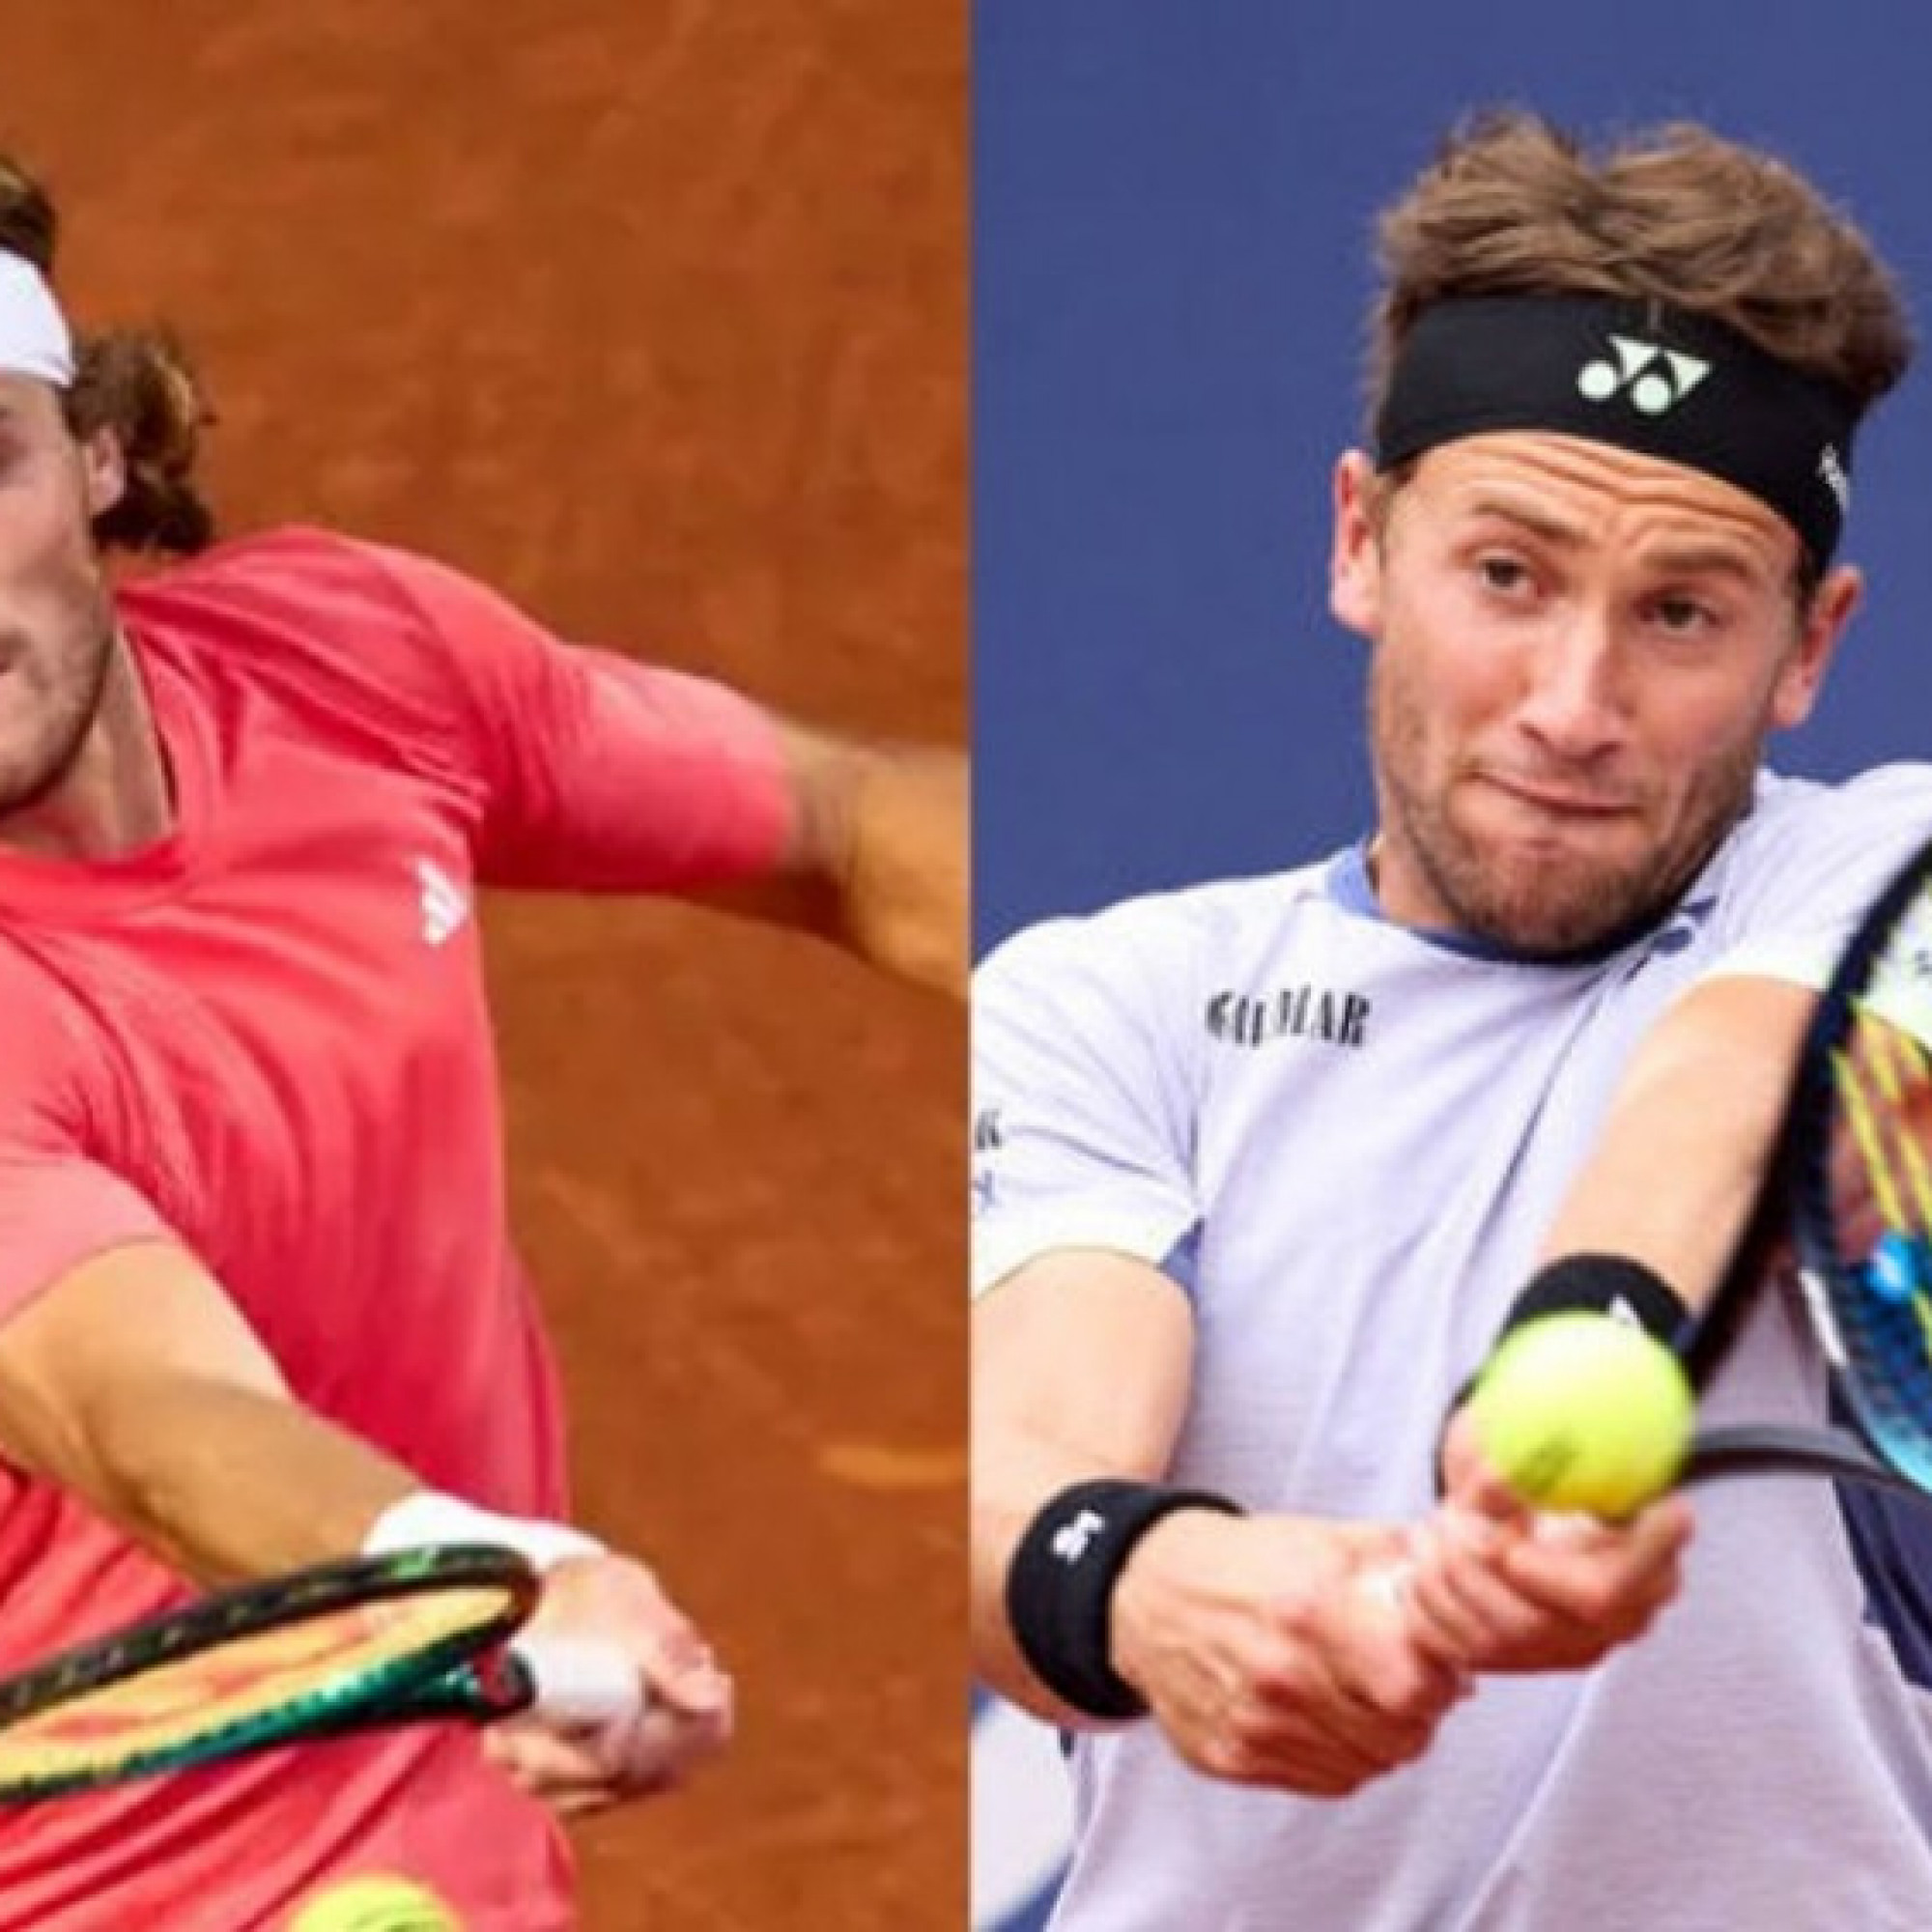  - Nóng rực tennis Barcelona Open: Ruud vào bán kết, Tsitsipas đấu đàn em Djokovic